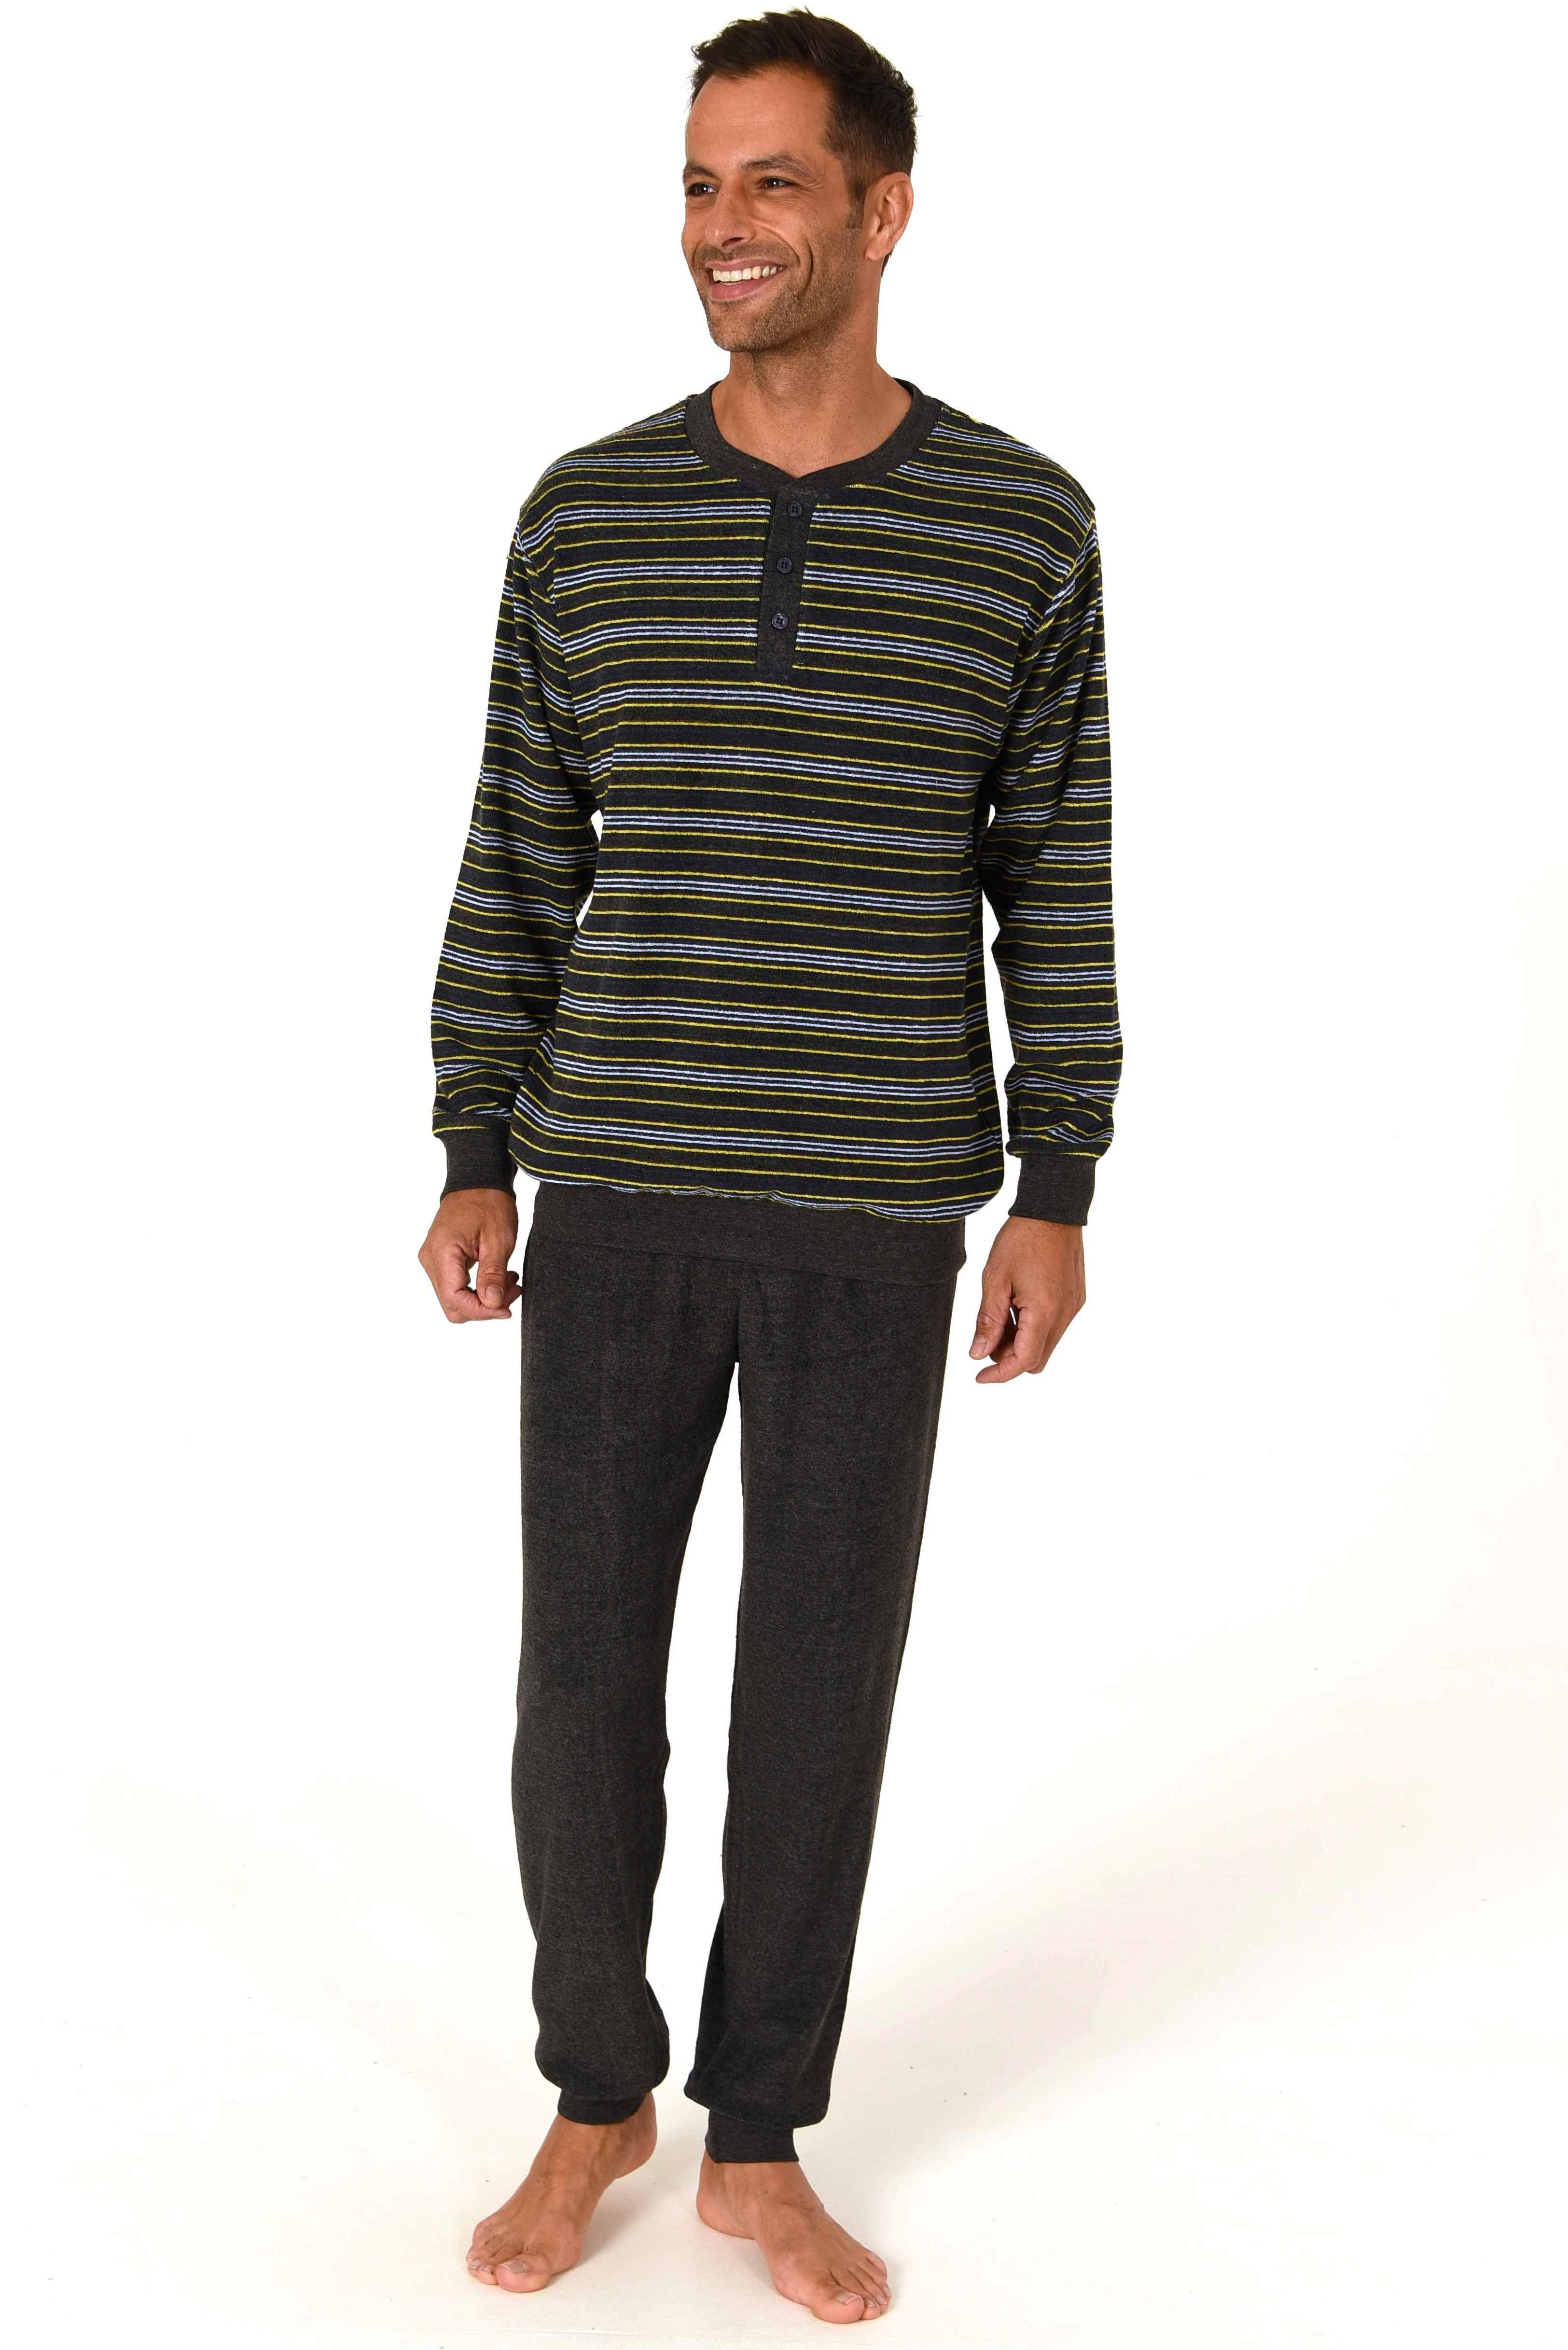 Normann badstof heren pyjama Trend 70259 - Geel - XL/54